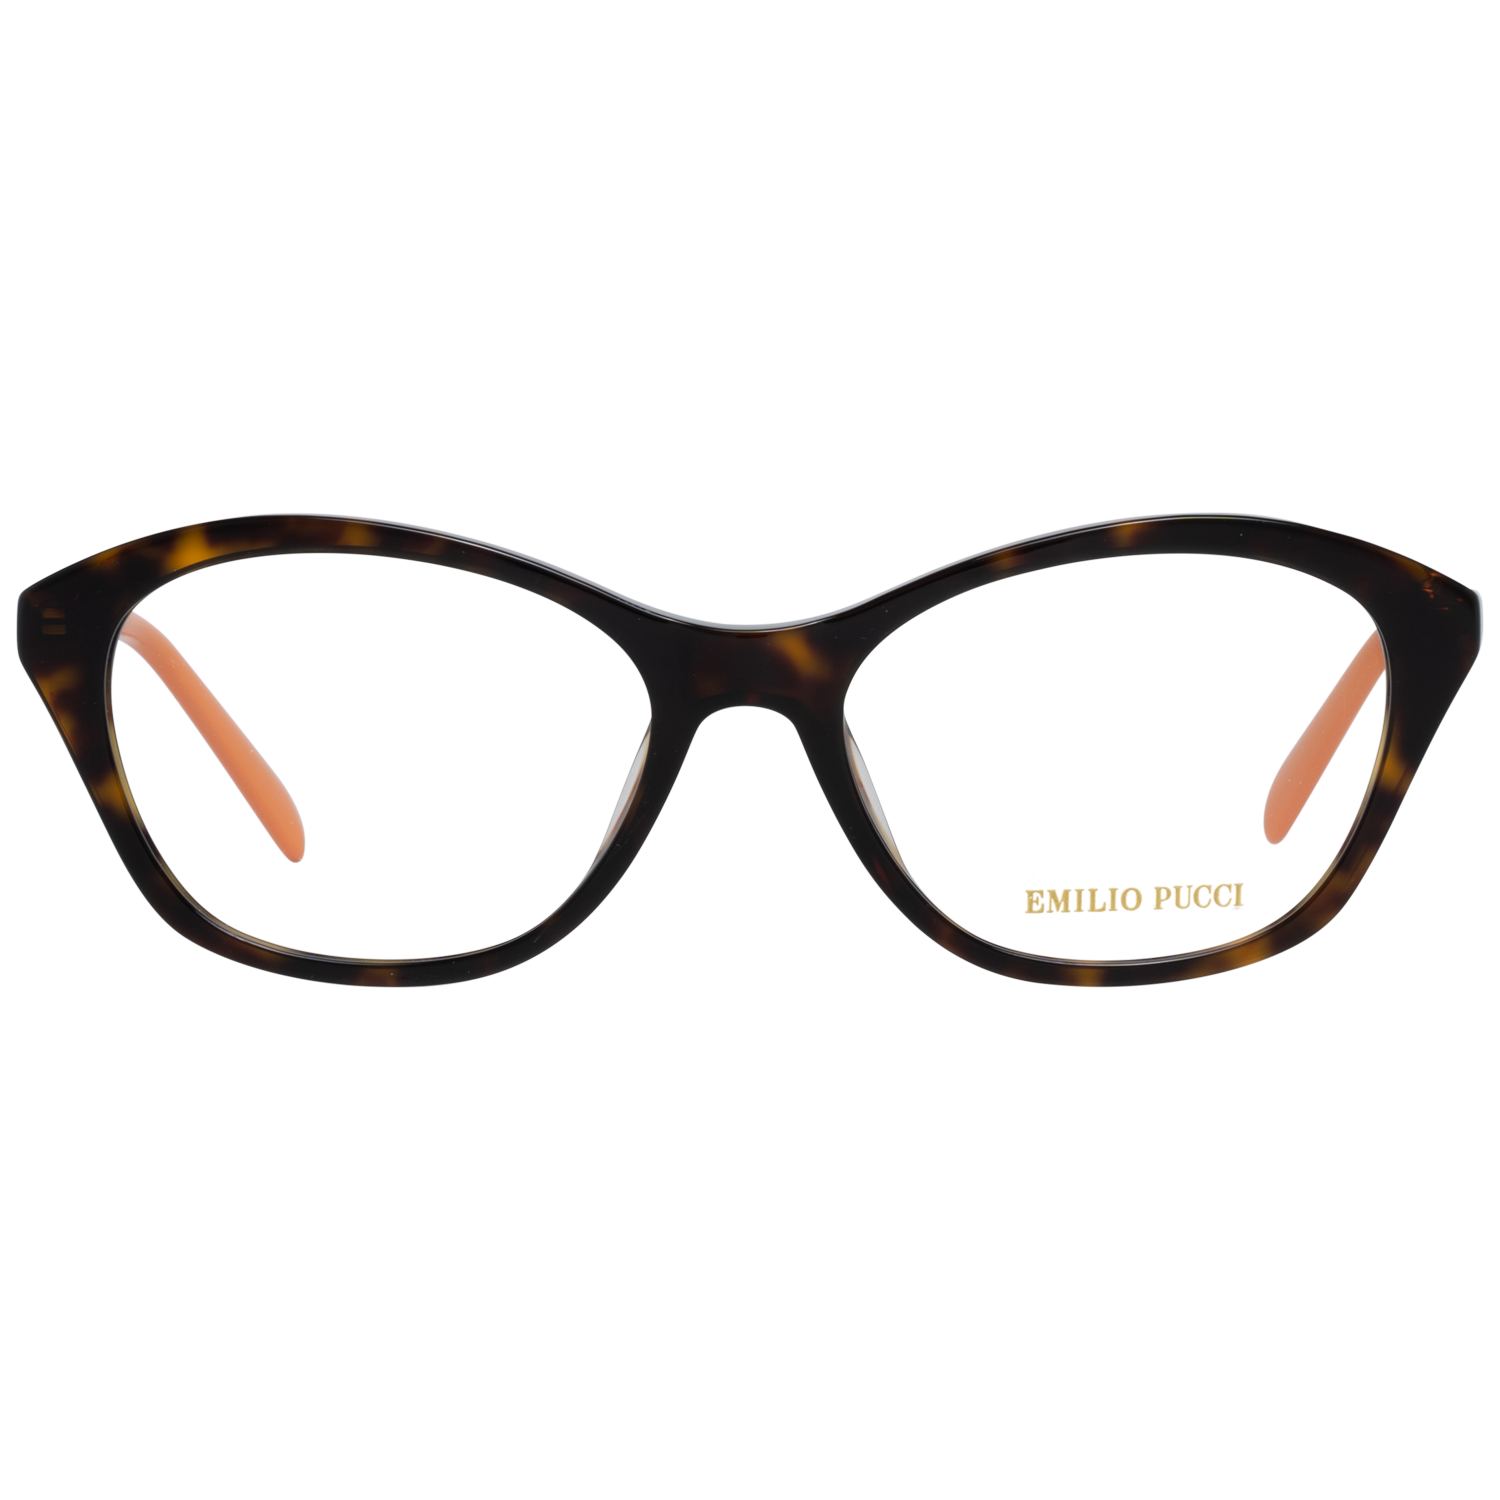 Emilio Pucci Frames Emilio Pucci Optical Frame EP5100 052 54 Eyeglasses Eyewear UK USA Australia 